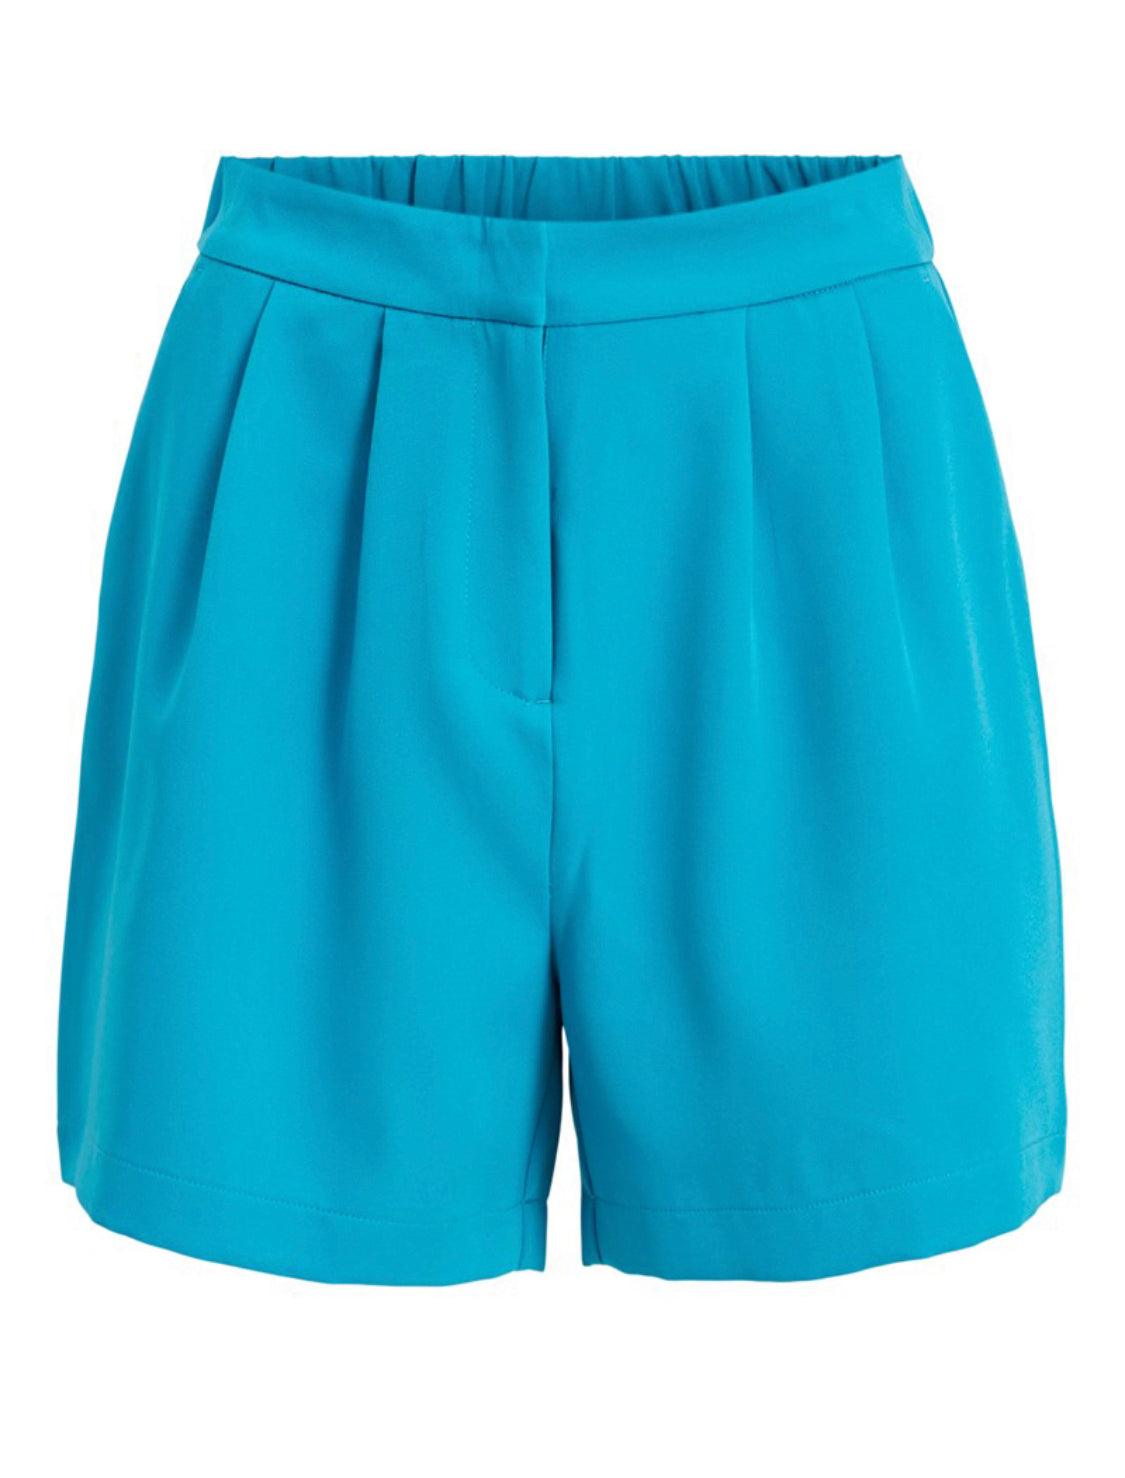 Teal Algiers blue shorts - Our Secret Boutique  Our Secret Boutique